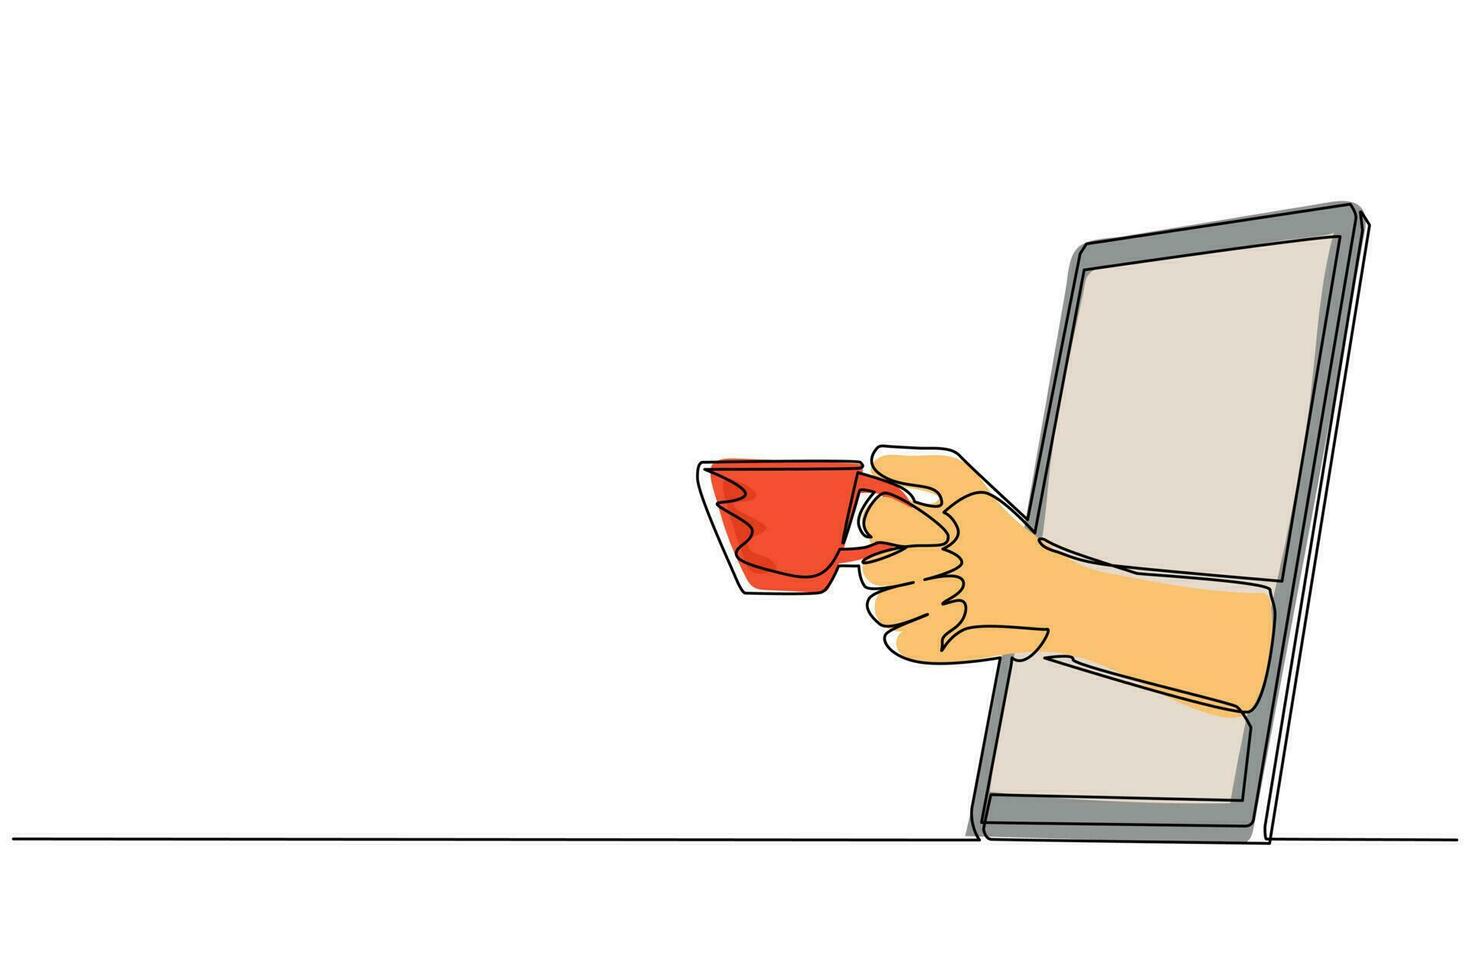 kontinuerlig en rad ritning hand som håller en kopp varmt kaffe genom mobiltelefonen. begreppet café dryck beställa leverans online mat. app för smartphones. enkel rad rita design vektorillustration vektor